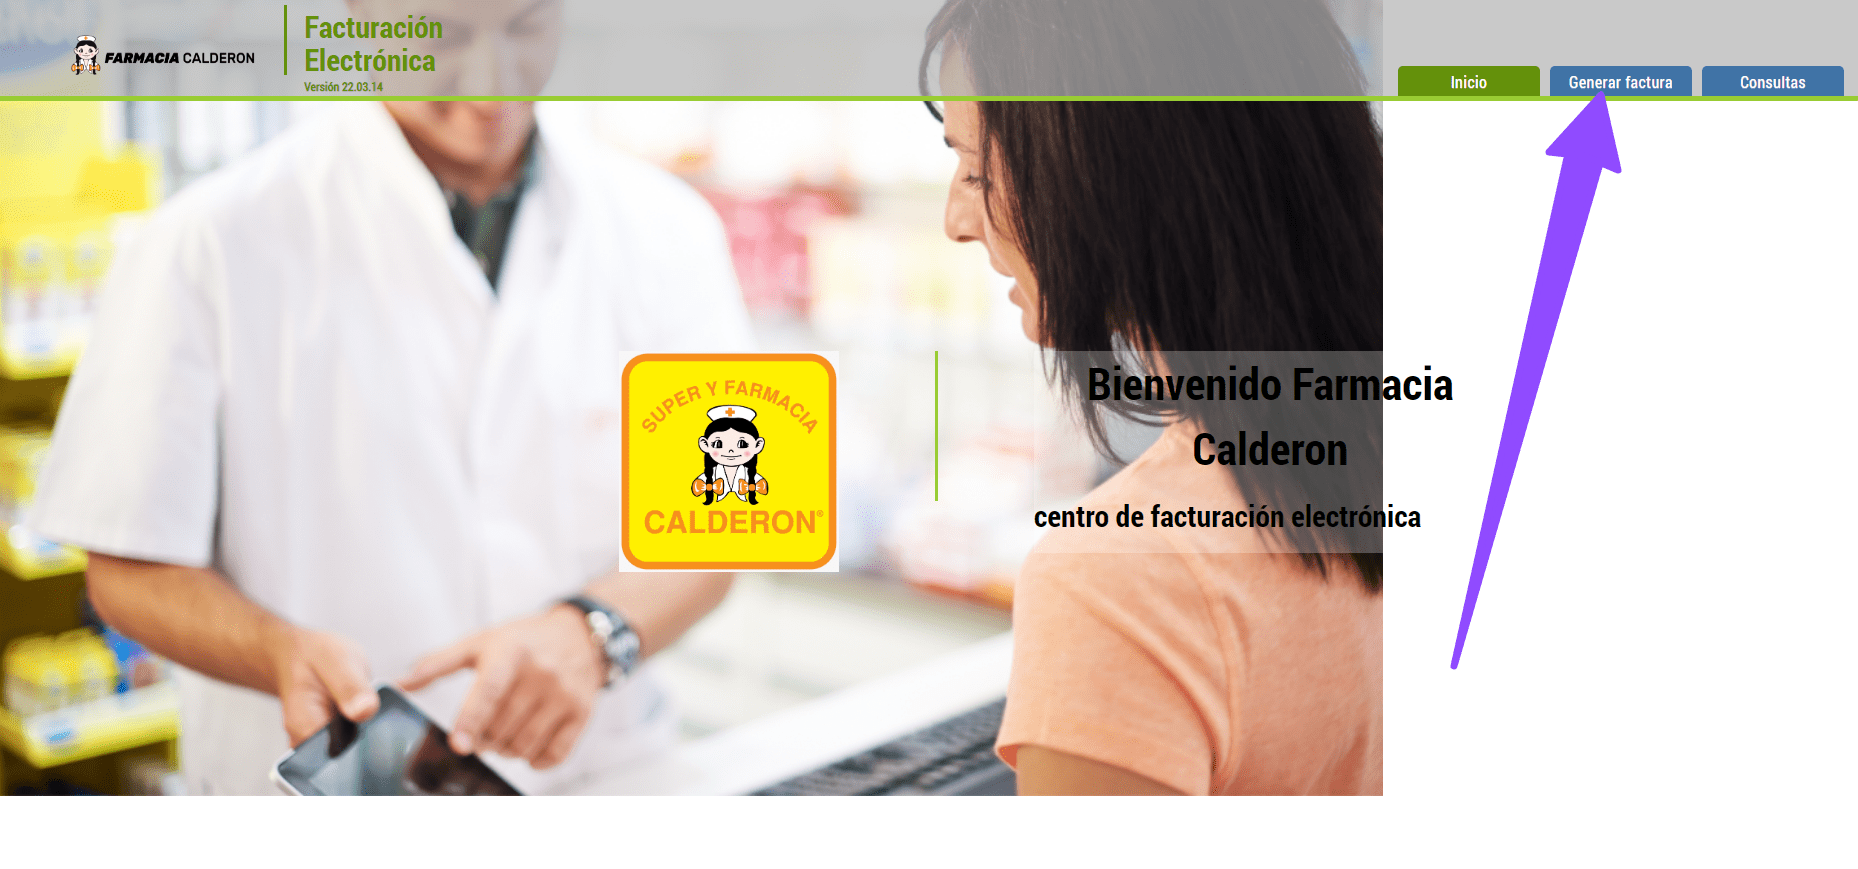 Entrar a generar factura Farmacia Calderon Facturacion ADN Fiscal